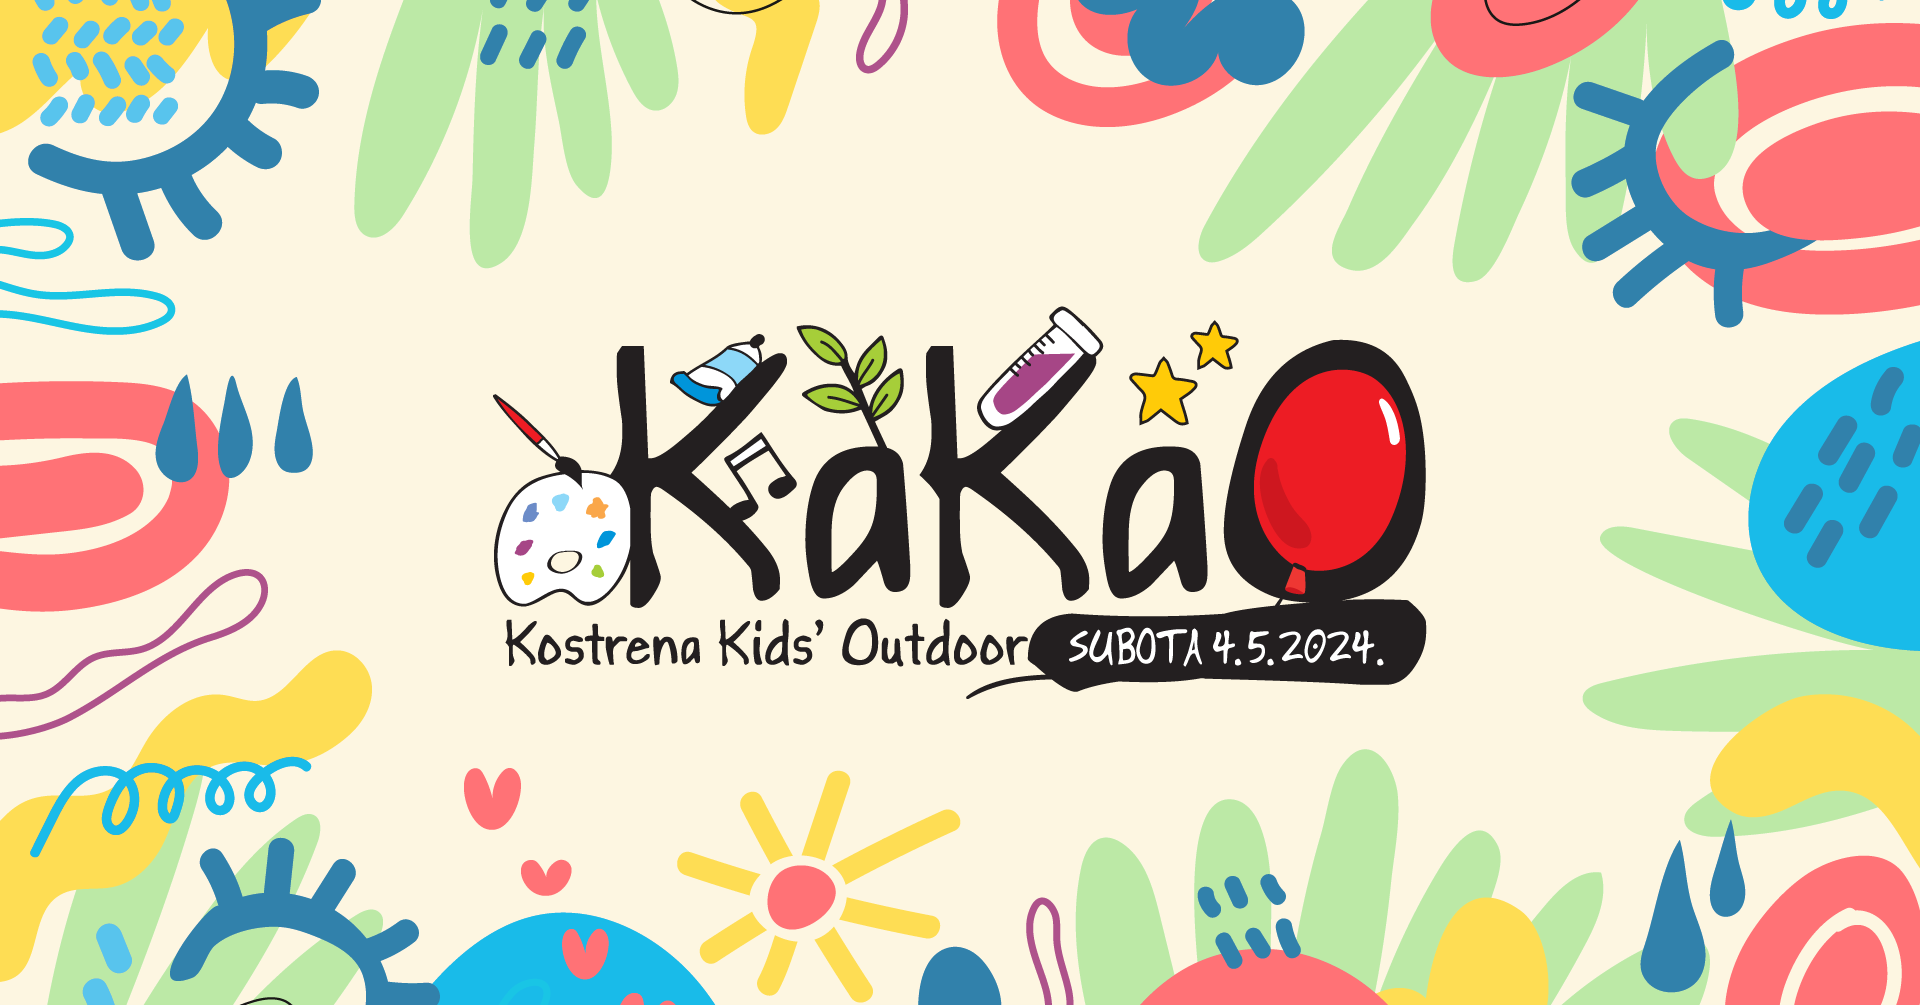 Kostrena kids' outdoor  - KaKaO 2024.